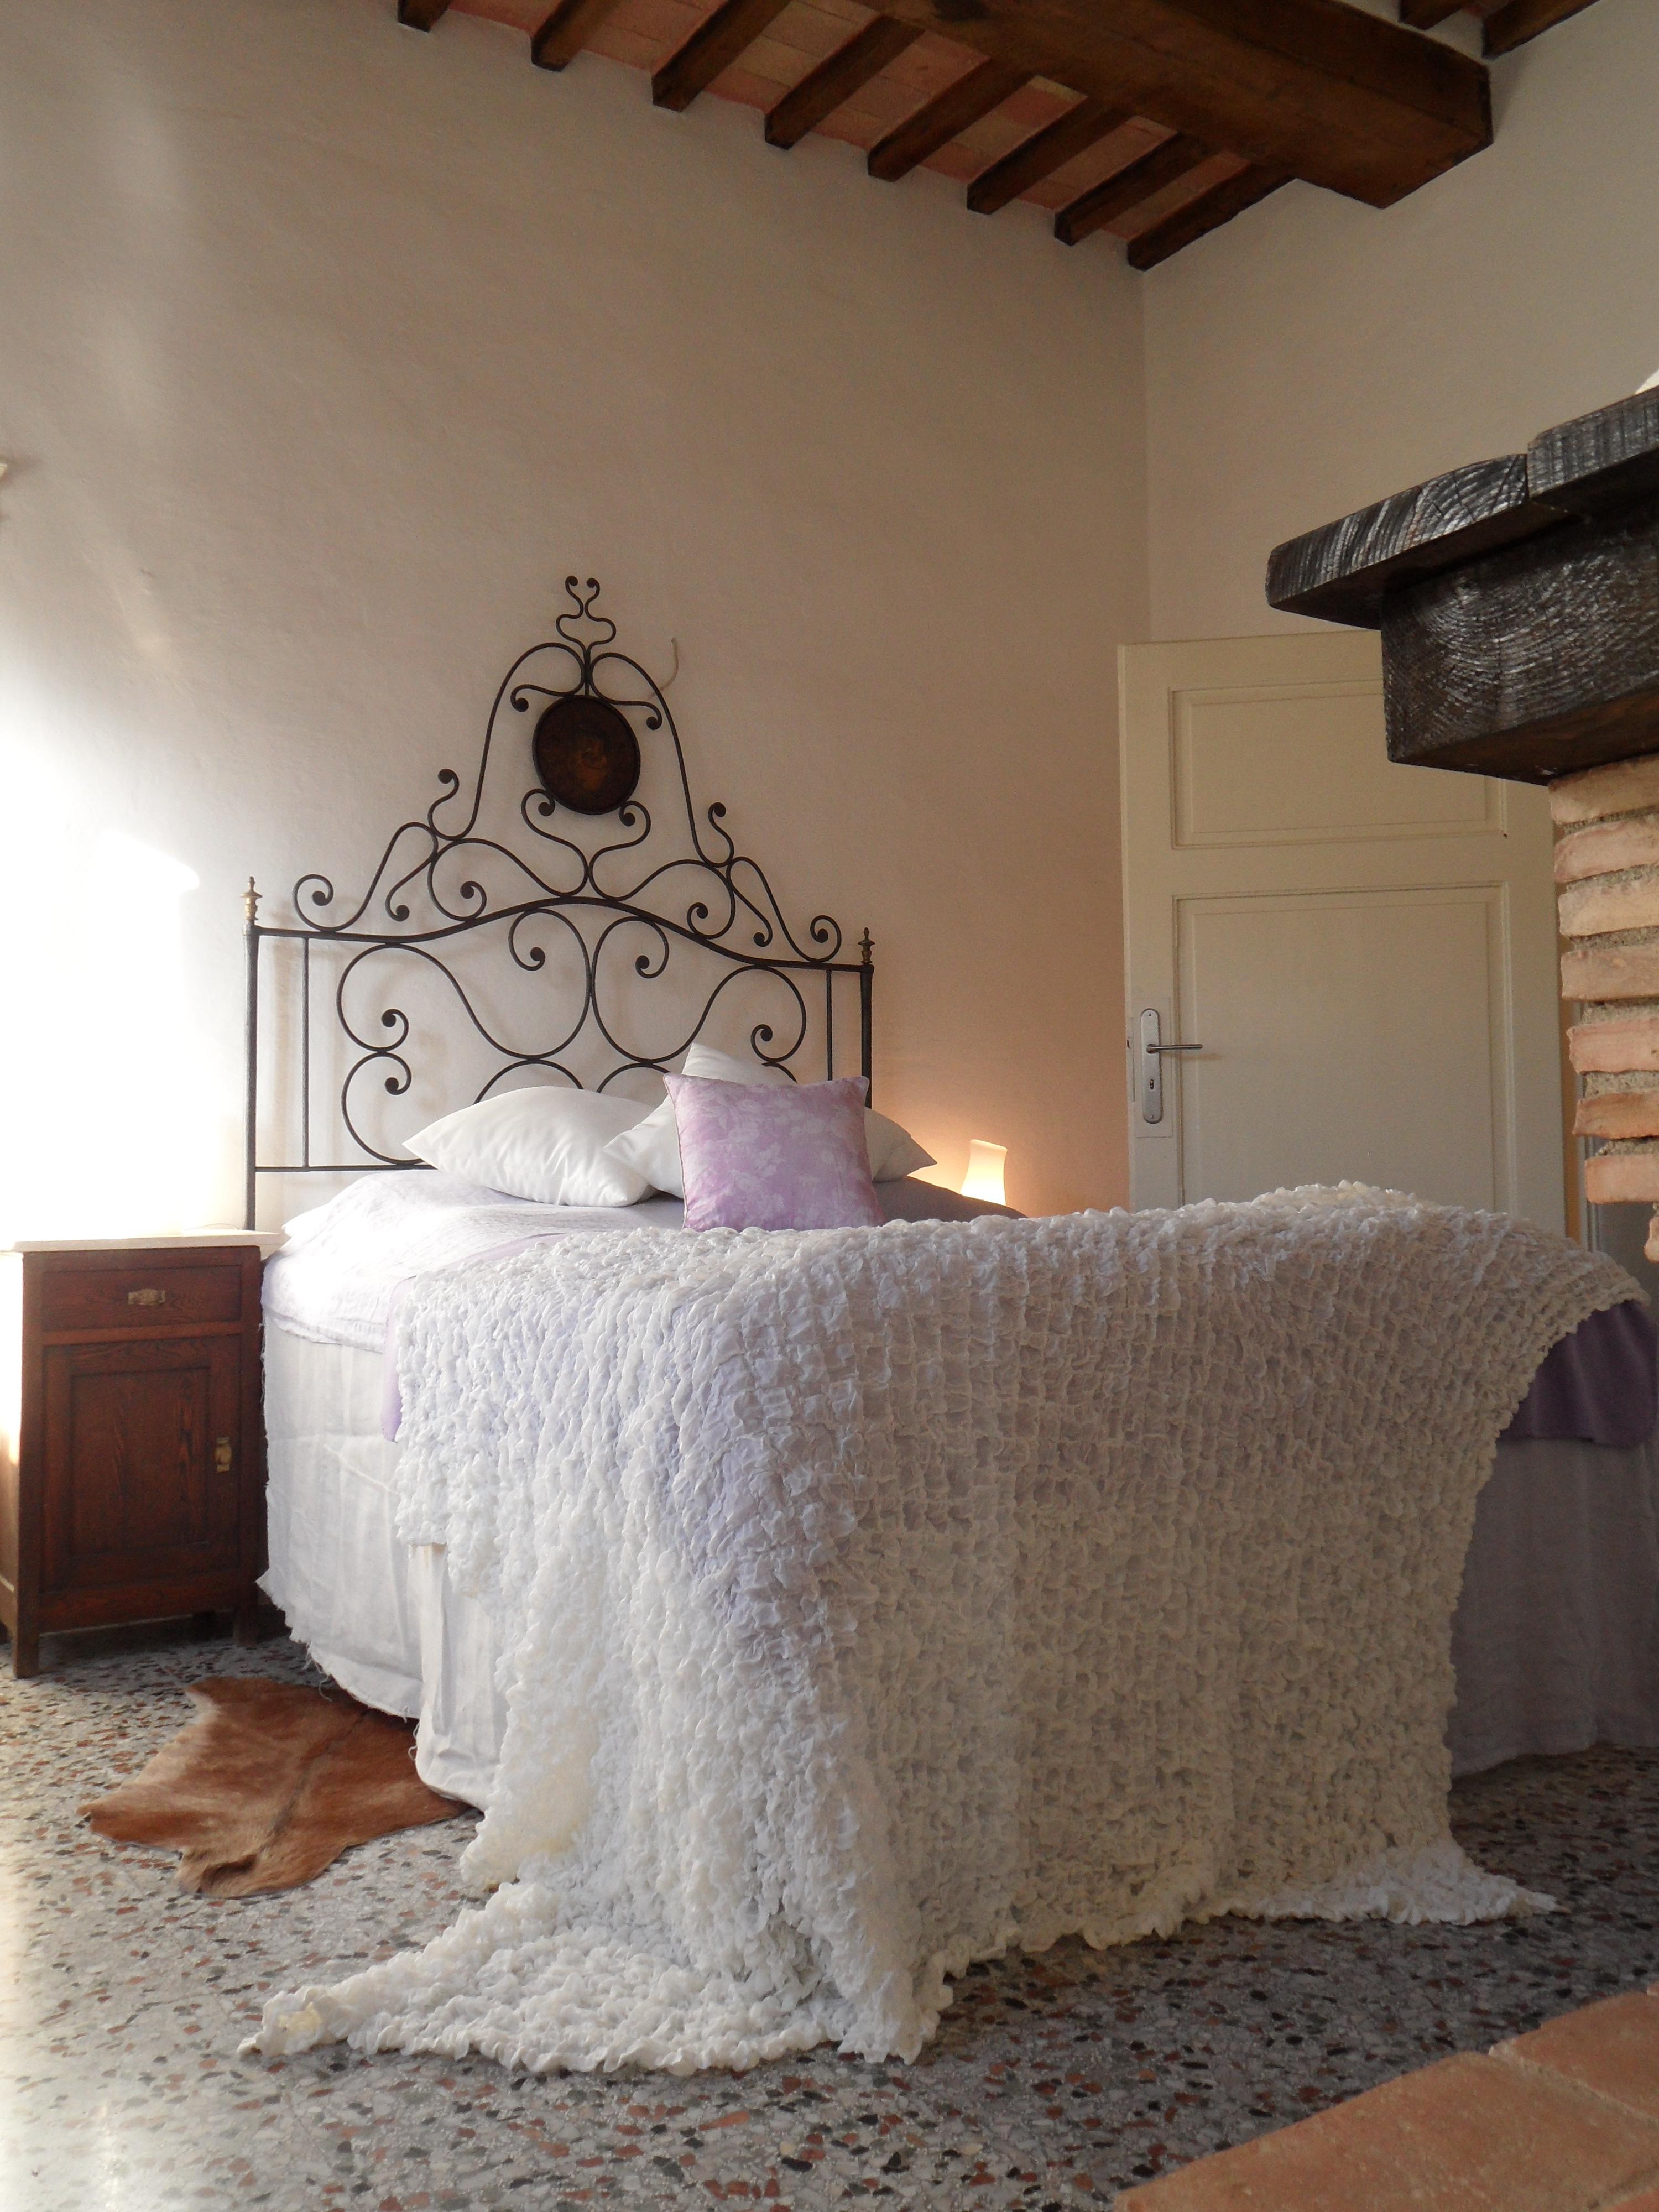 Einladender Schlafplatz im Gästeschlafzimmer #bett #tagesdecke #steinfußboden #metallbett #bettüberwurf ©Yvonne Heinemann